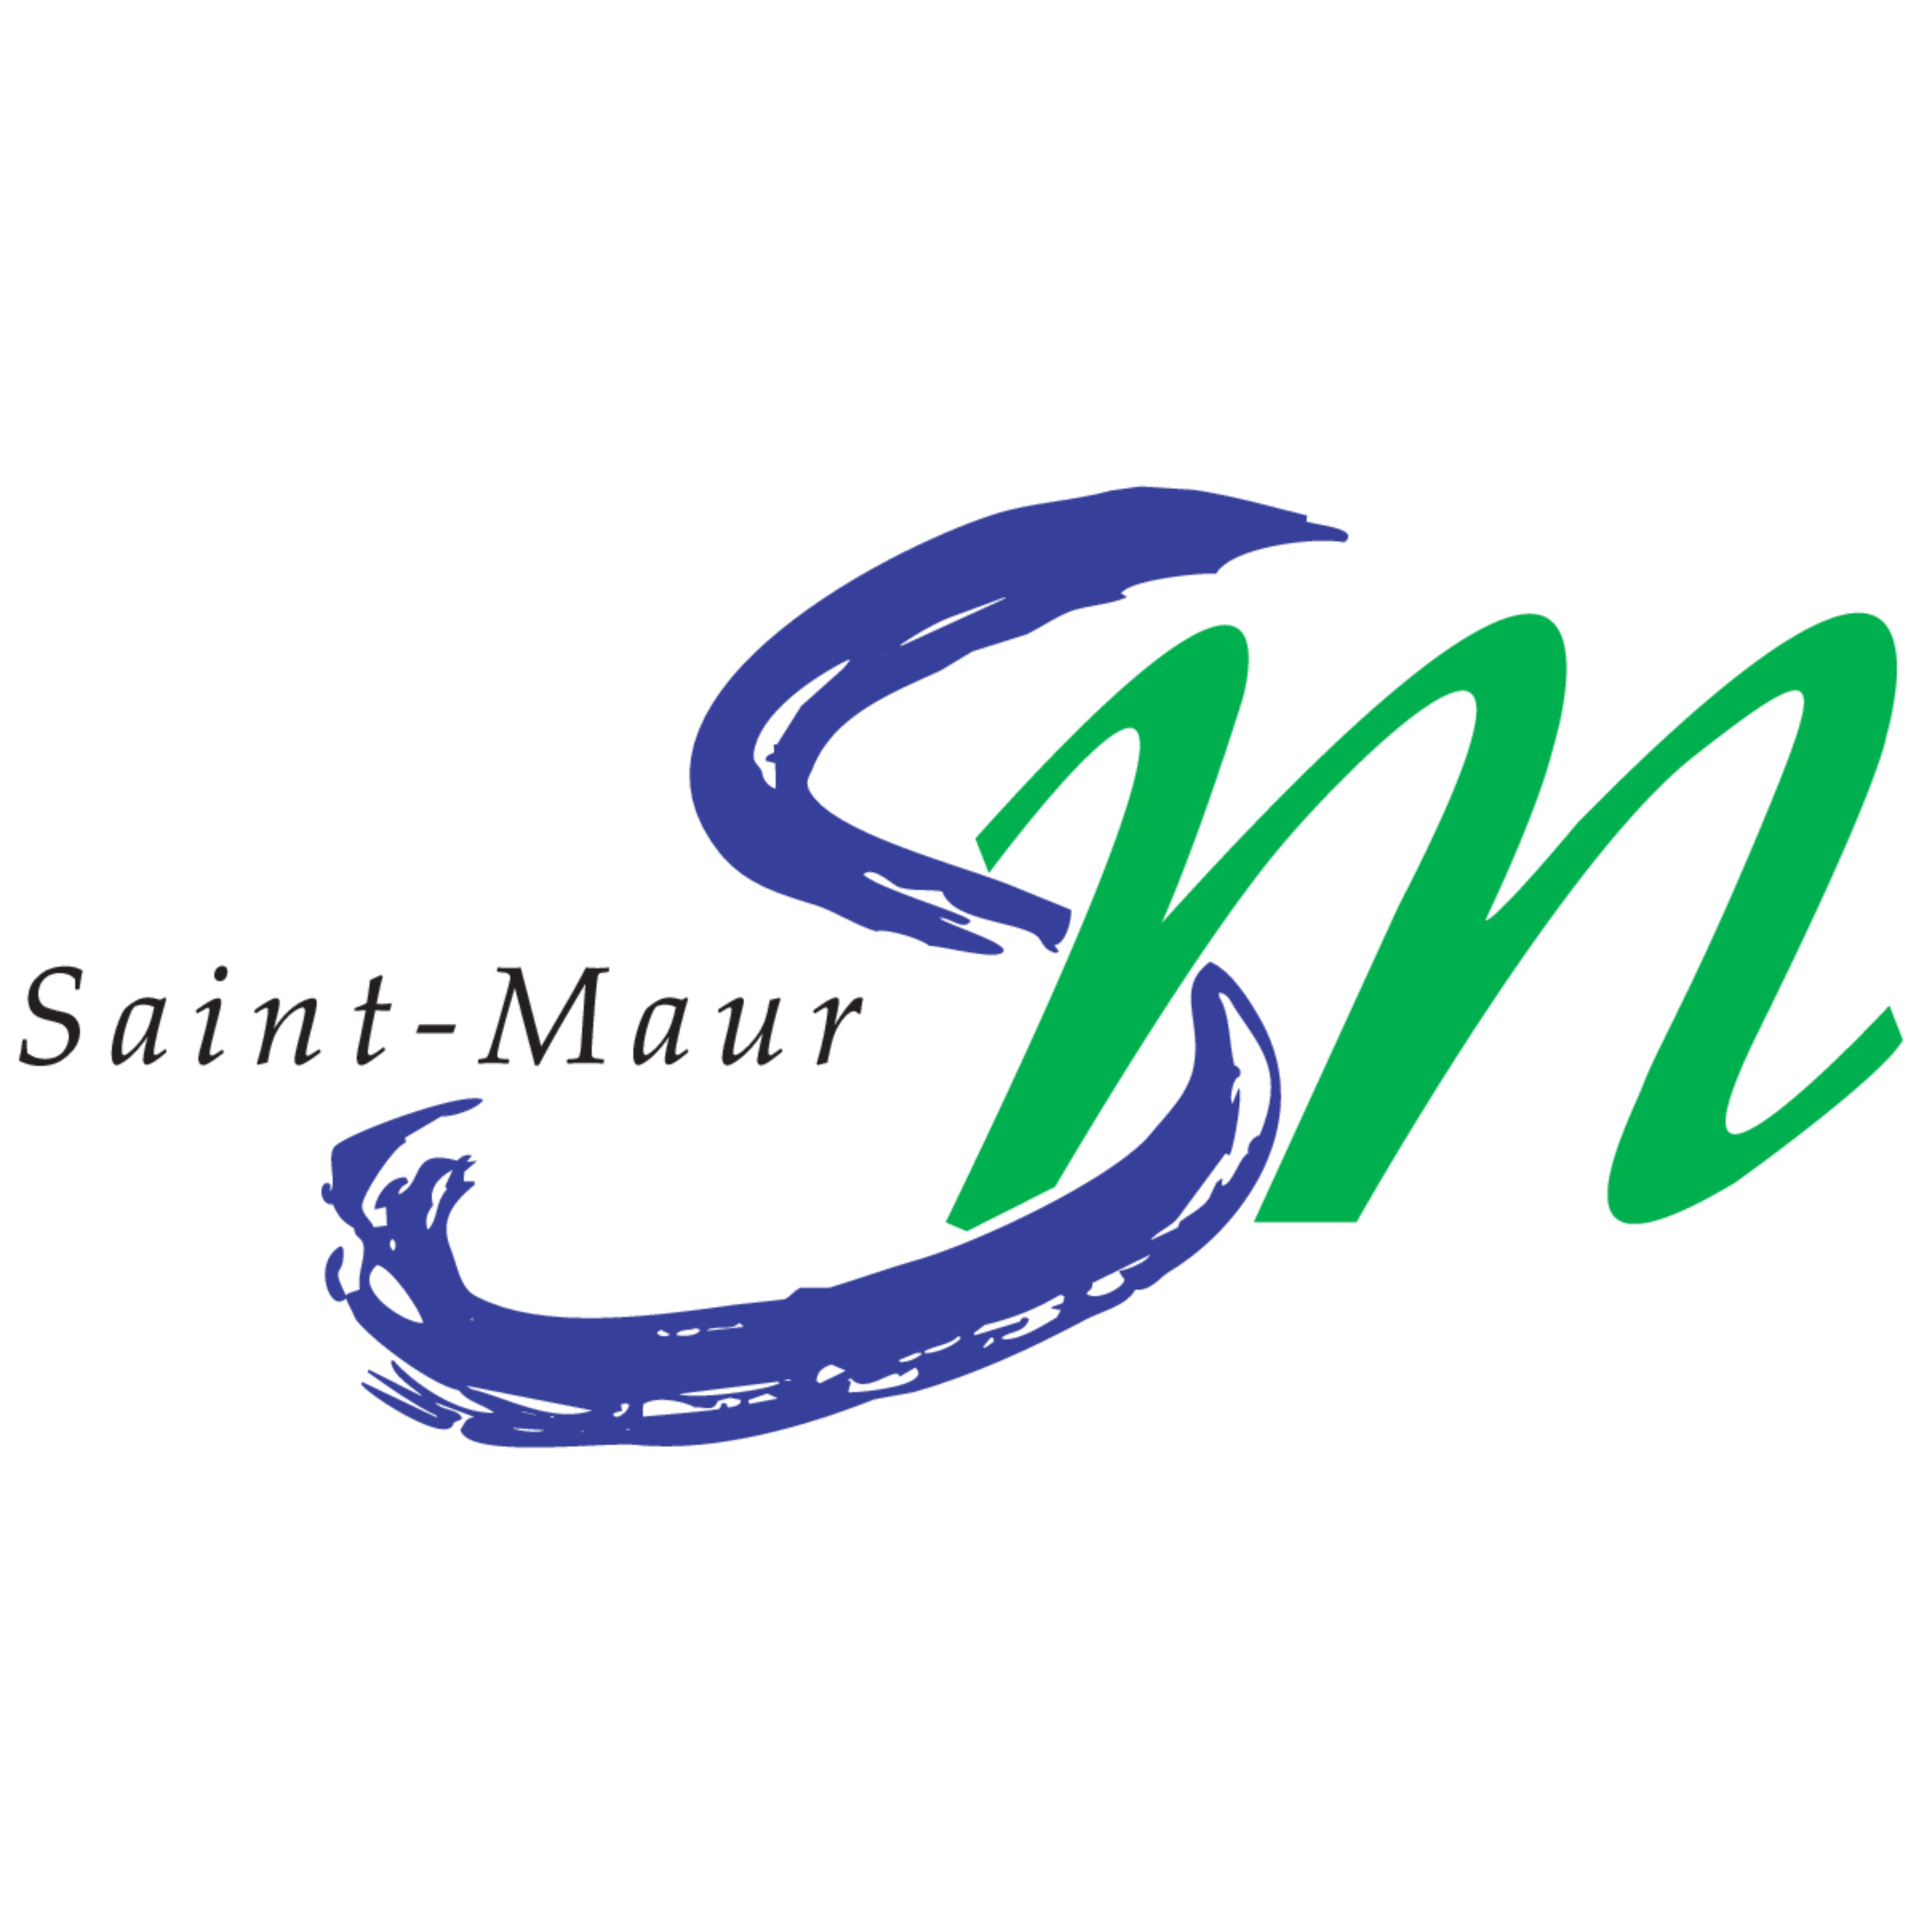 La Cav de Saint-Maur - Petitscommerces.fr